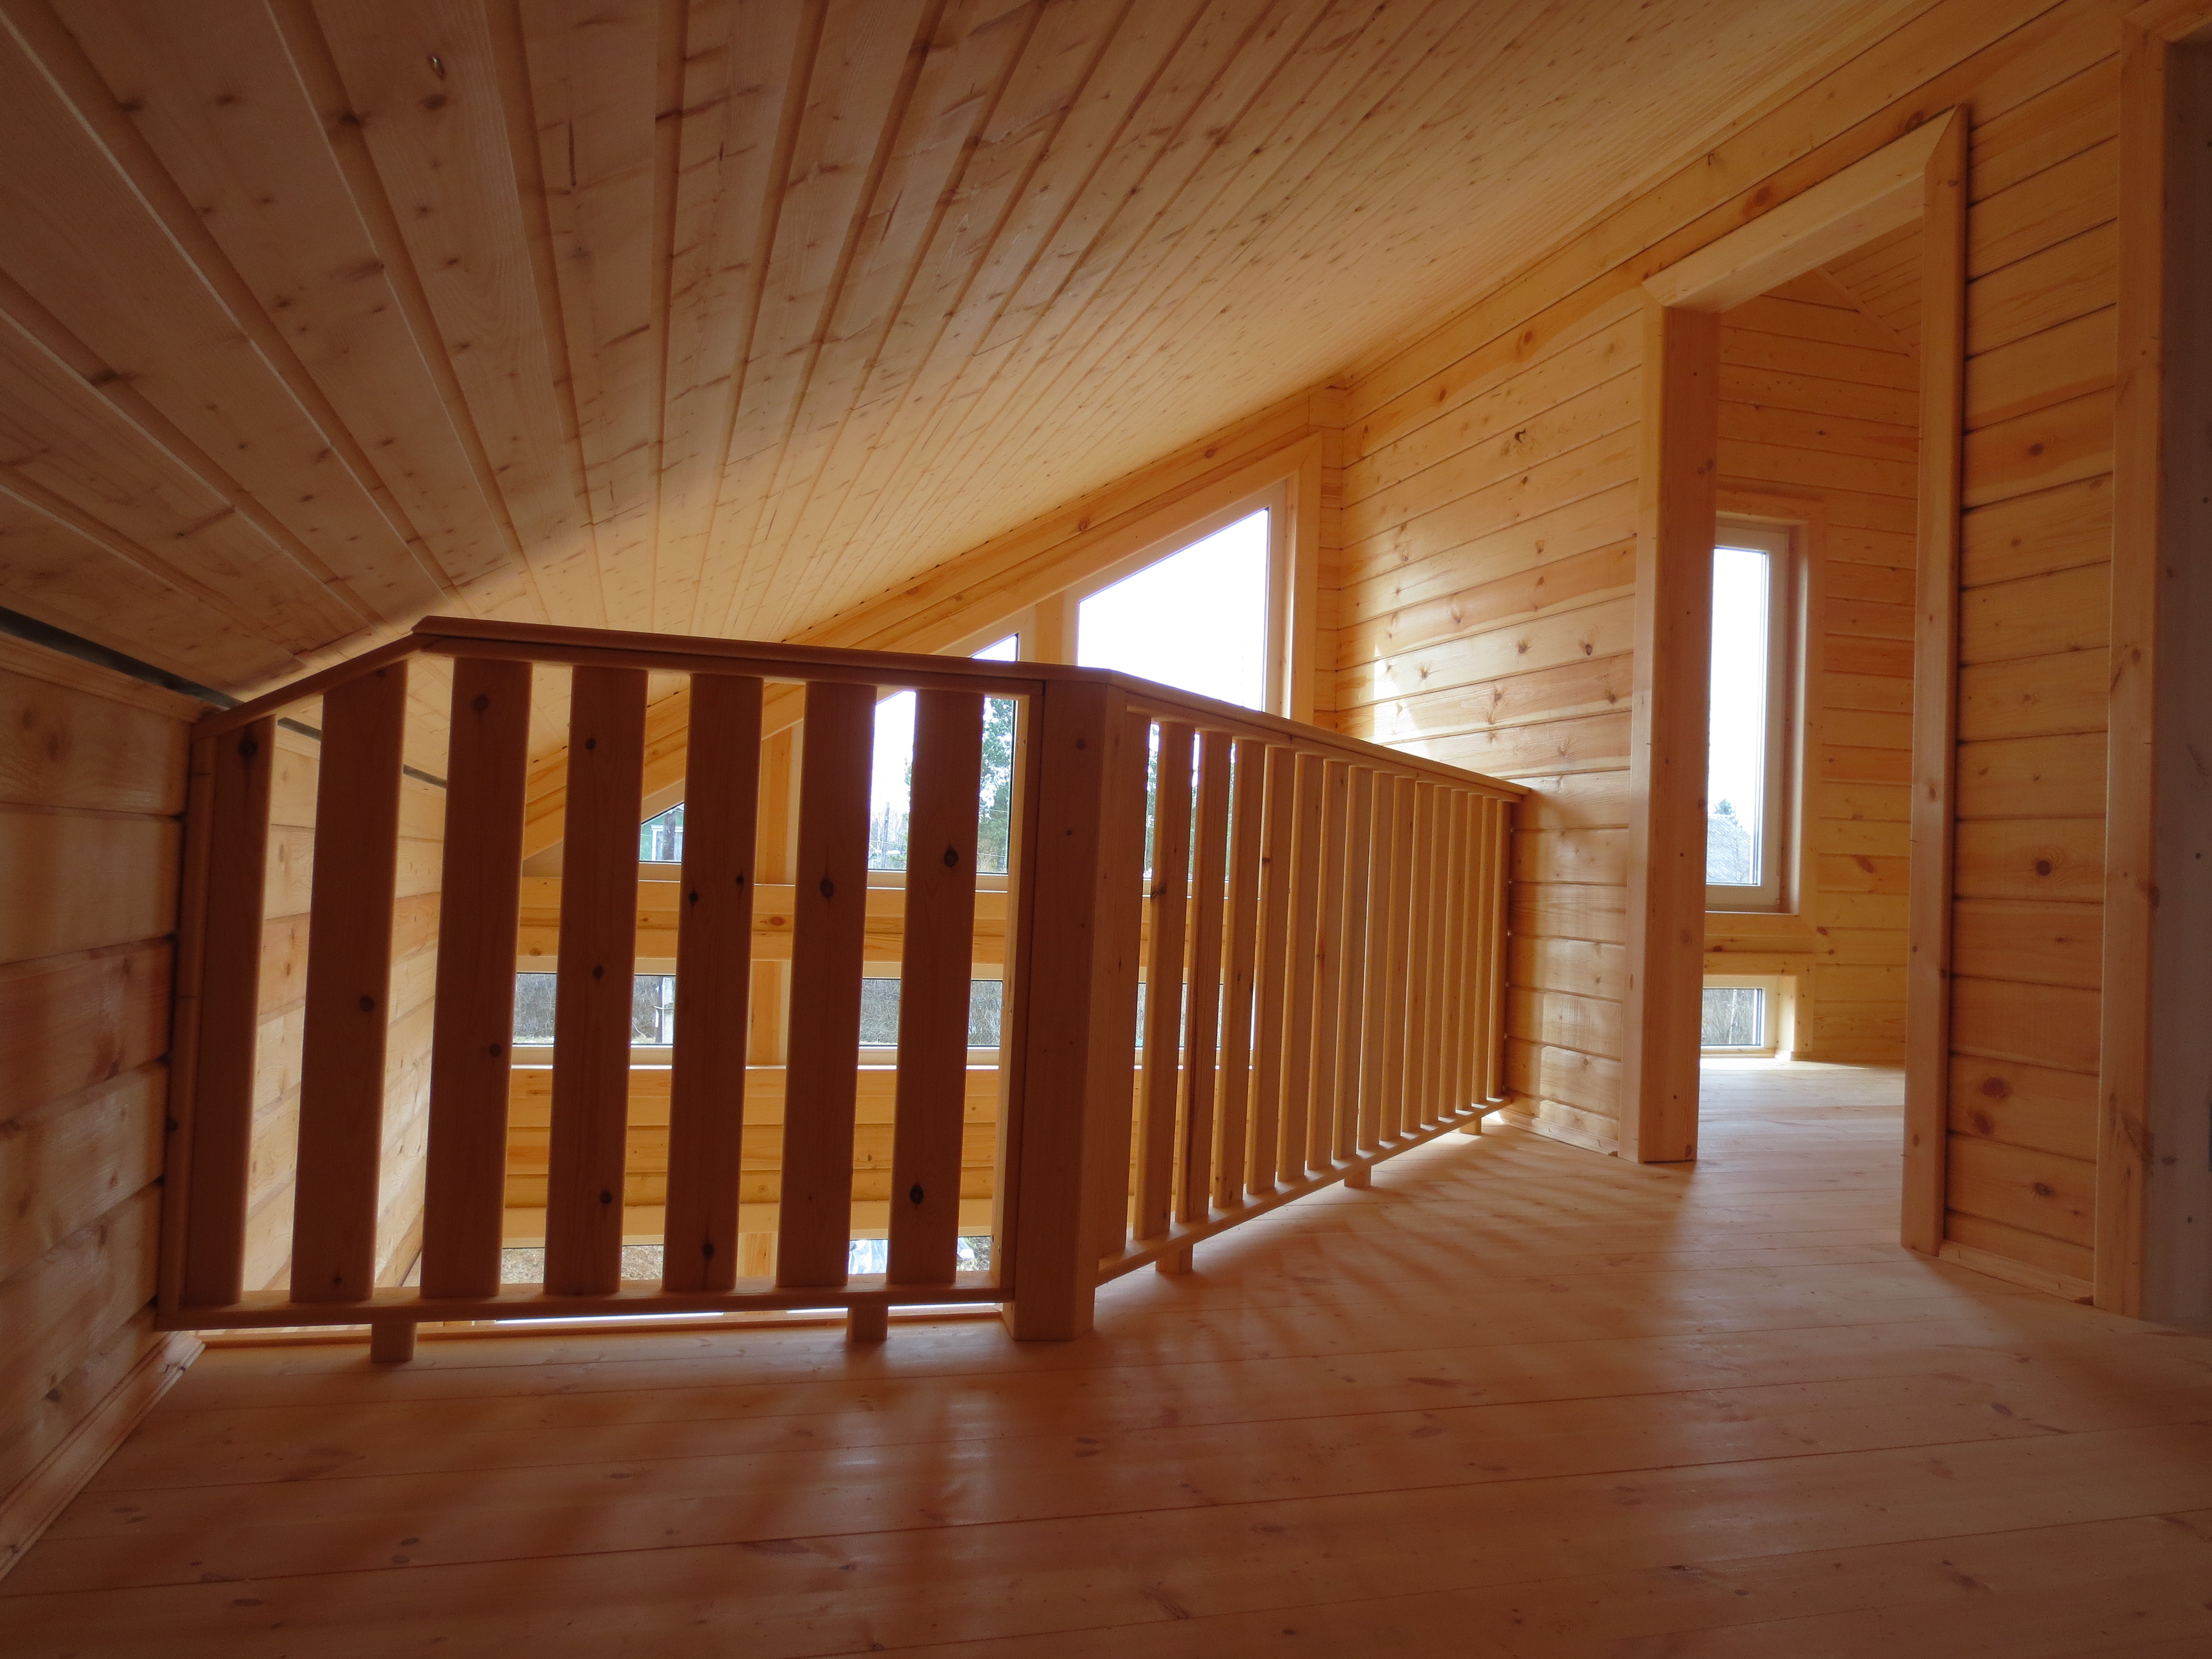 Как правильно осуществить обшивку внутри дома: варианты отделки деревянного дома